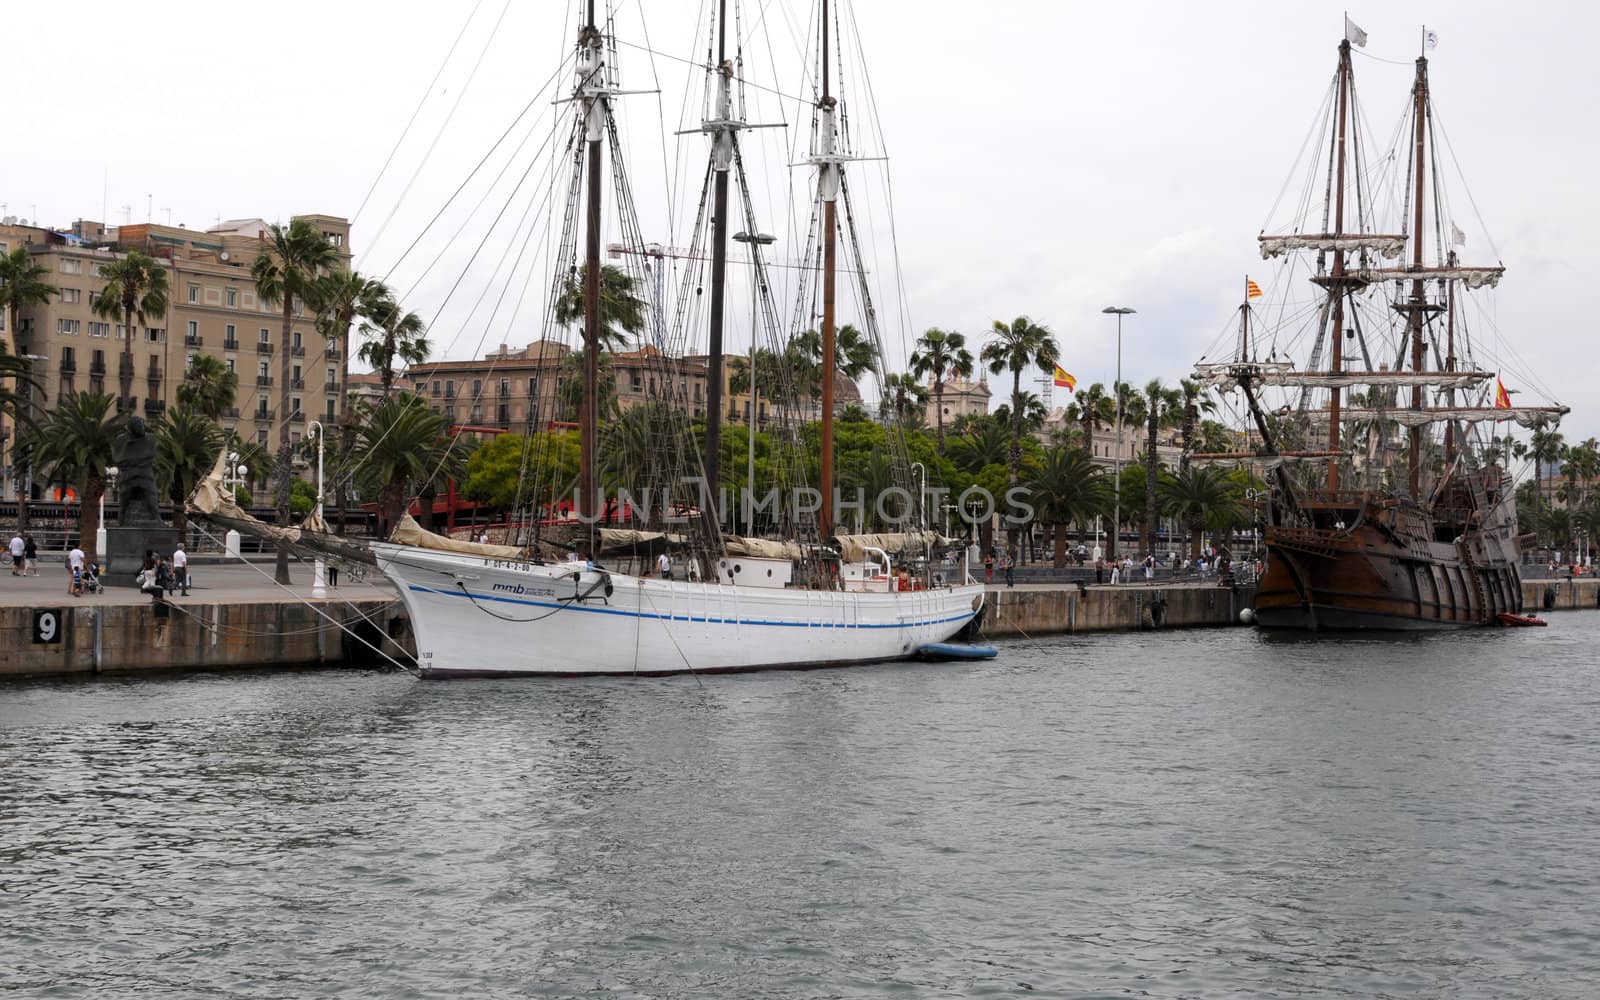 A three mast ship in Barcelona harbor